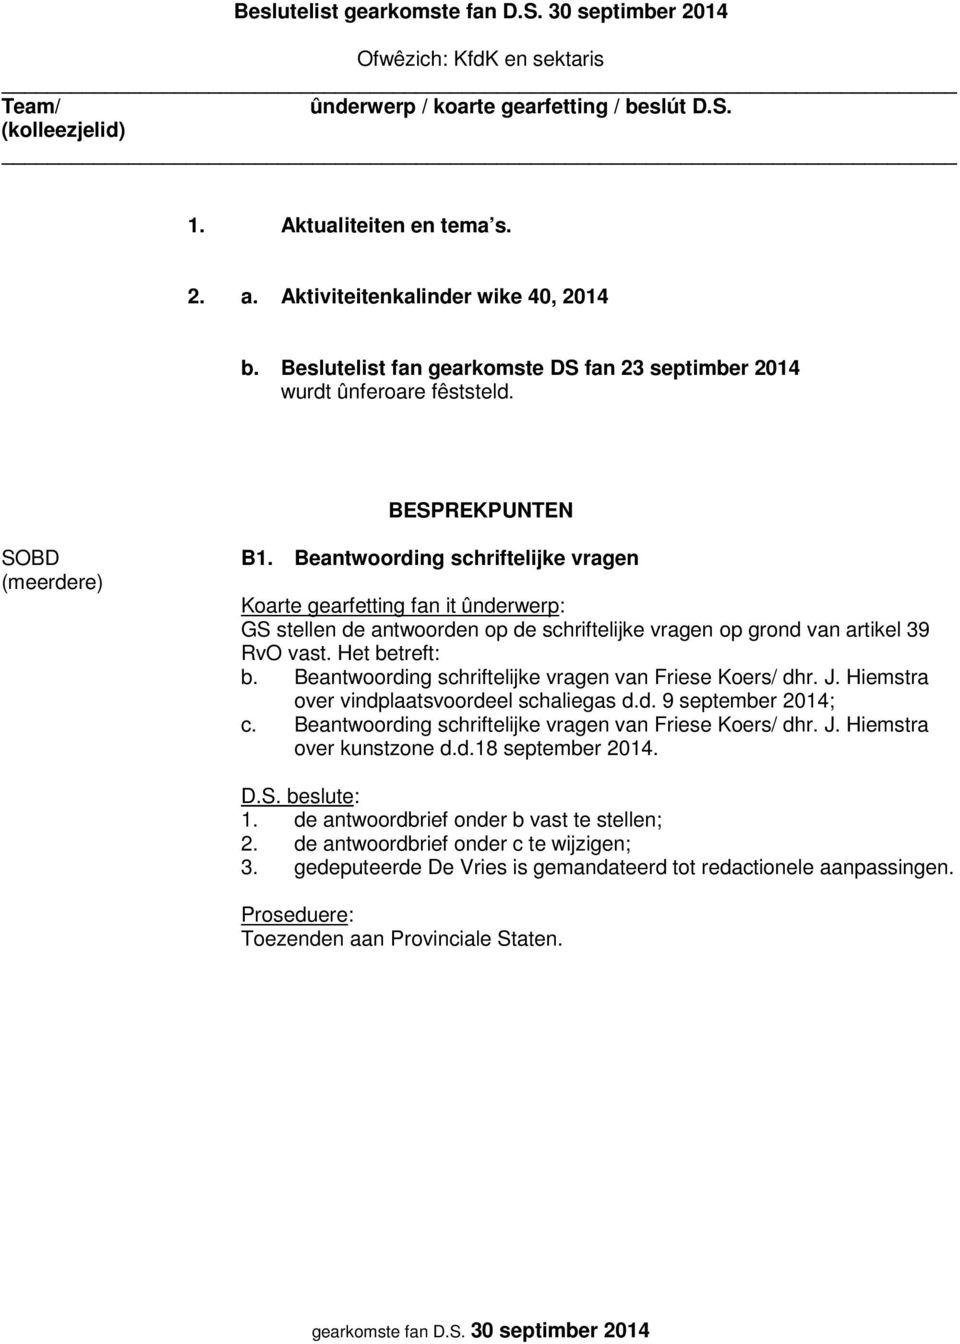 Beantwoording schriftelijke vragen van Friese Koers/ dhr. J. Hiemstra over vindplaatsvoordeel schaliegas d.d. 9 september 2014; c. Beantwoording schriftelijke vragen van Friese Koers/ dhr.